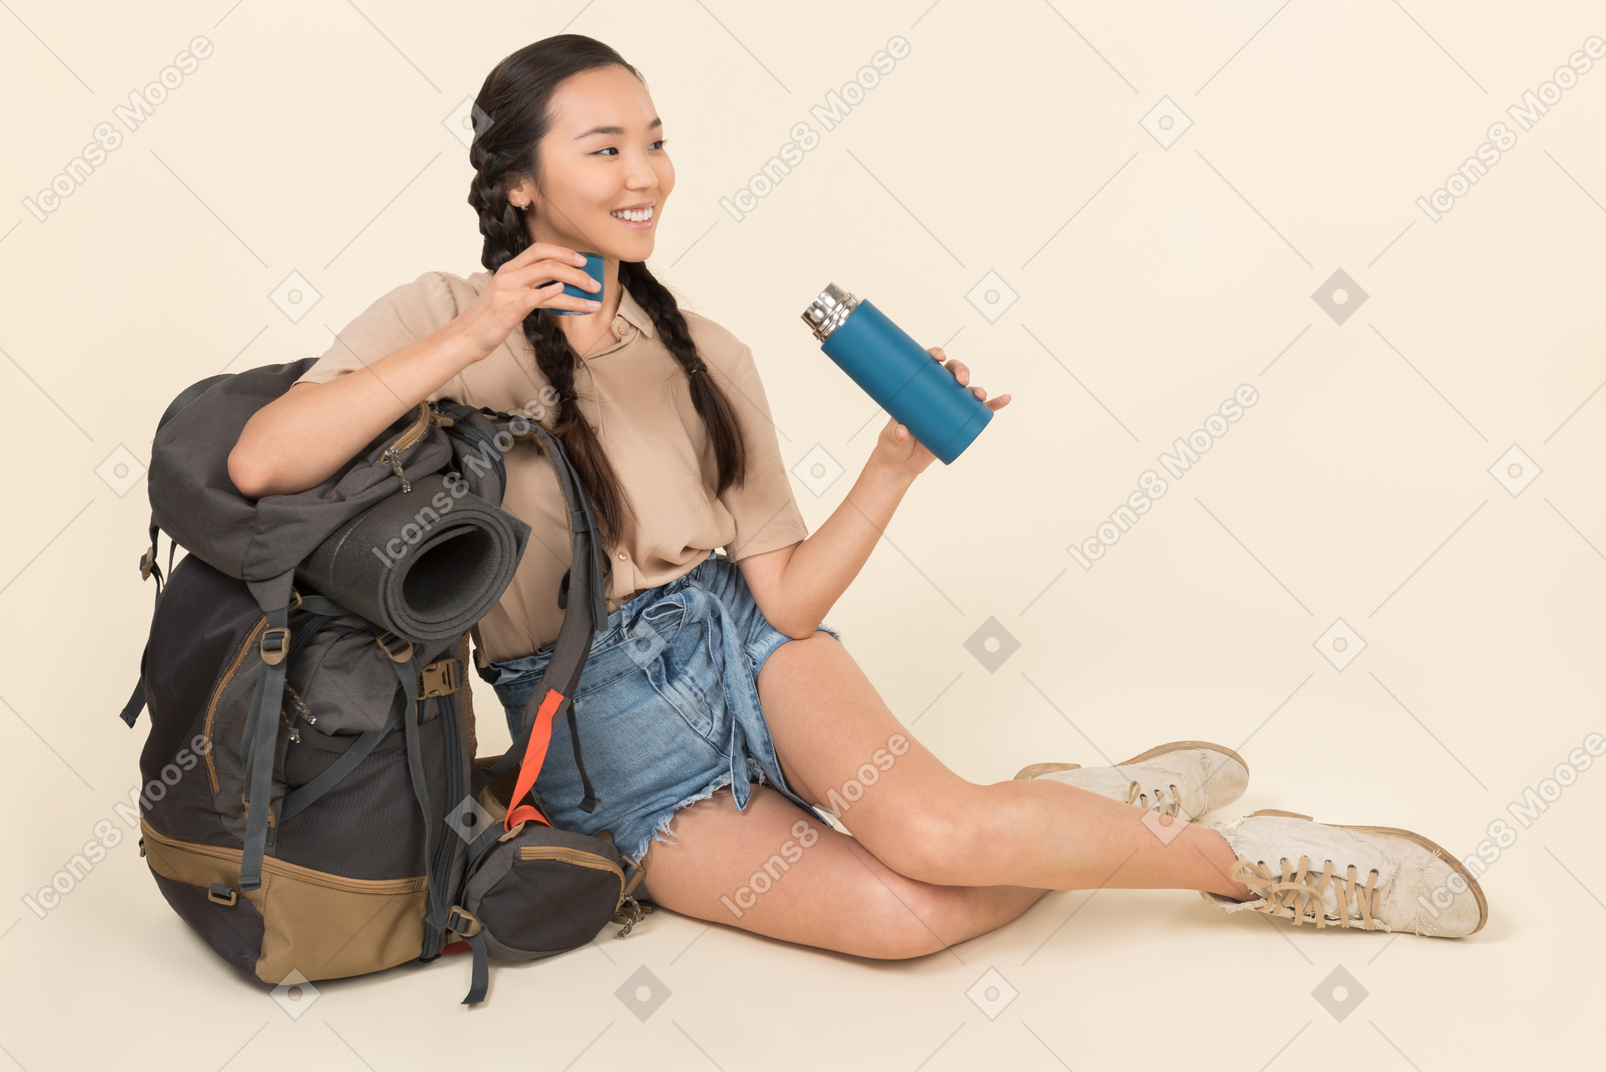 Jeune femme asiatique assise près de sac à dos et de manutention thermos